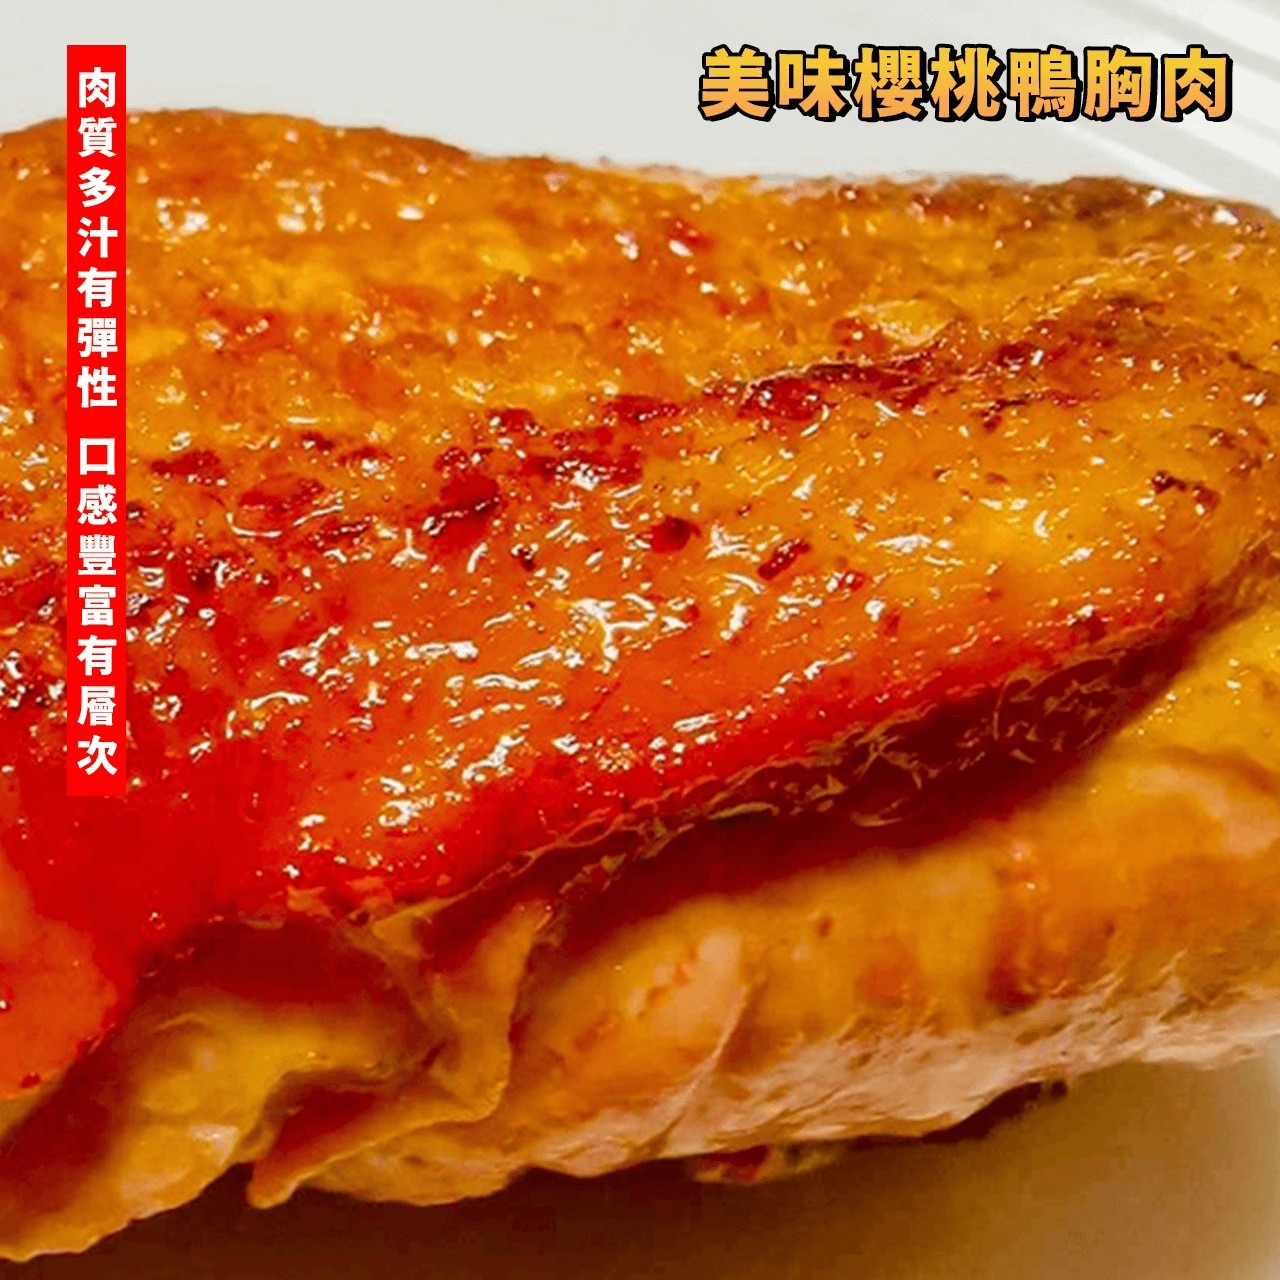 【鮮到貨】法式多汁櫻桃鴨胸肉 320g/包